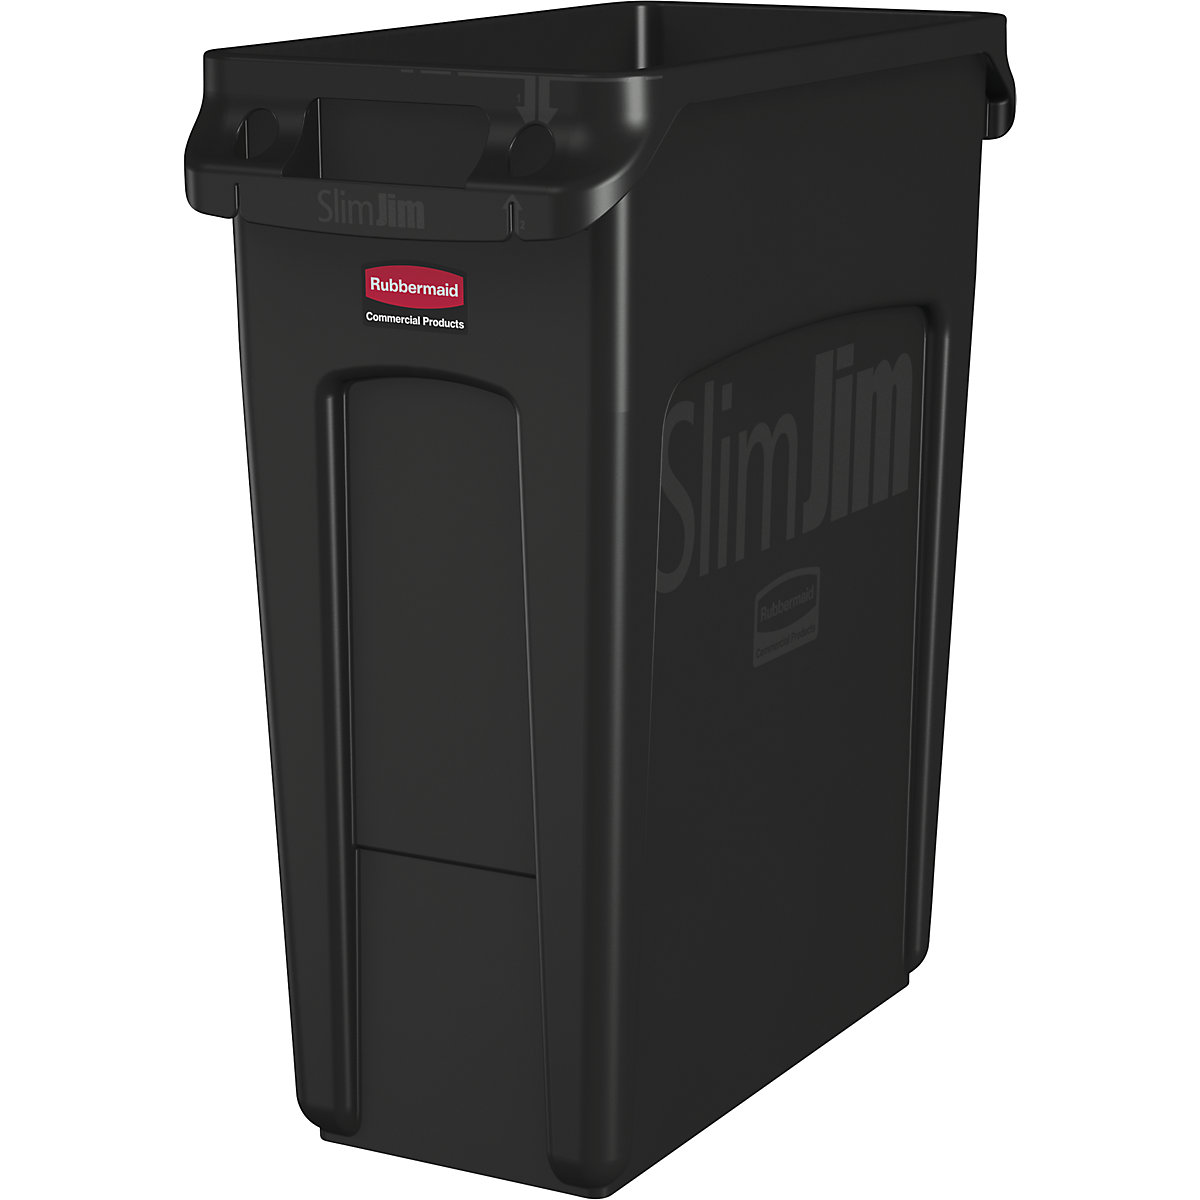 Nádoba na tříděný odpad/odpadkový koš SLIM JIM® – Rubbermaid, objem 60 l, s větracími kanálky, černá, od 3 ks-12